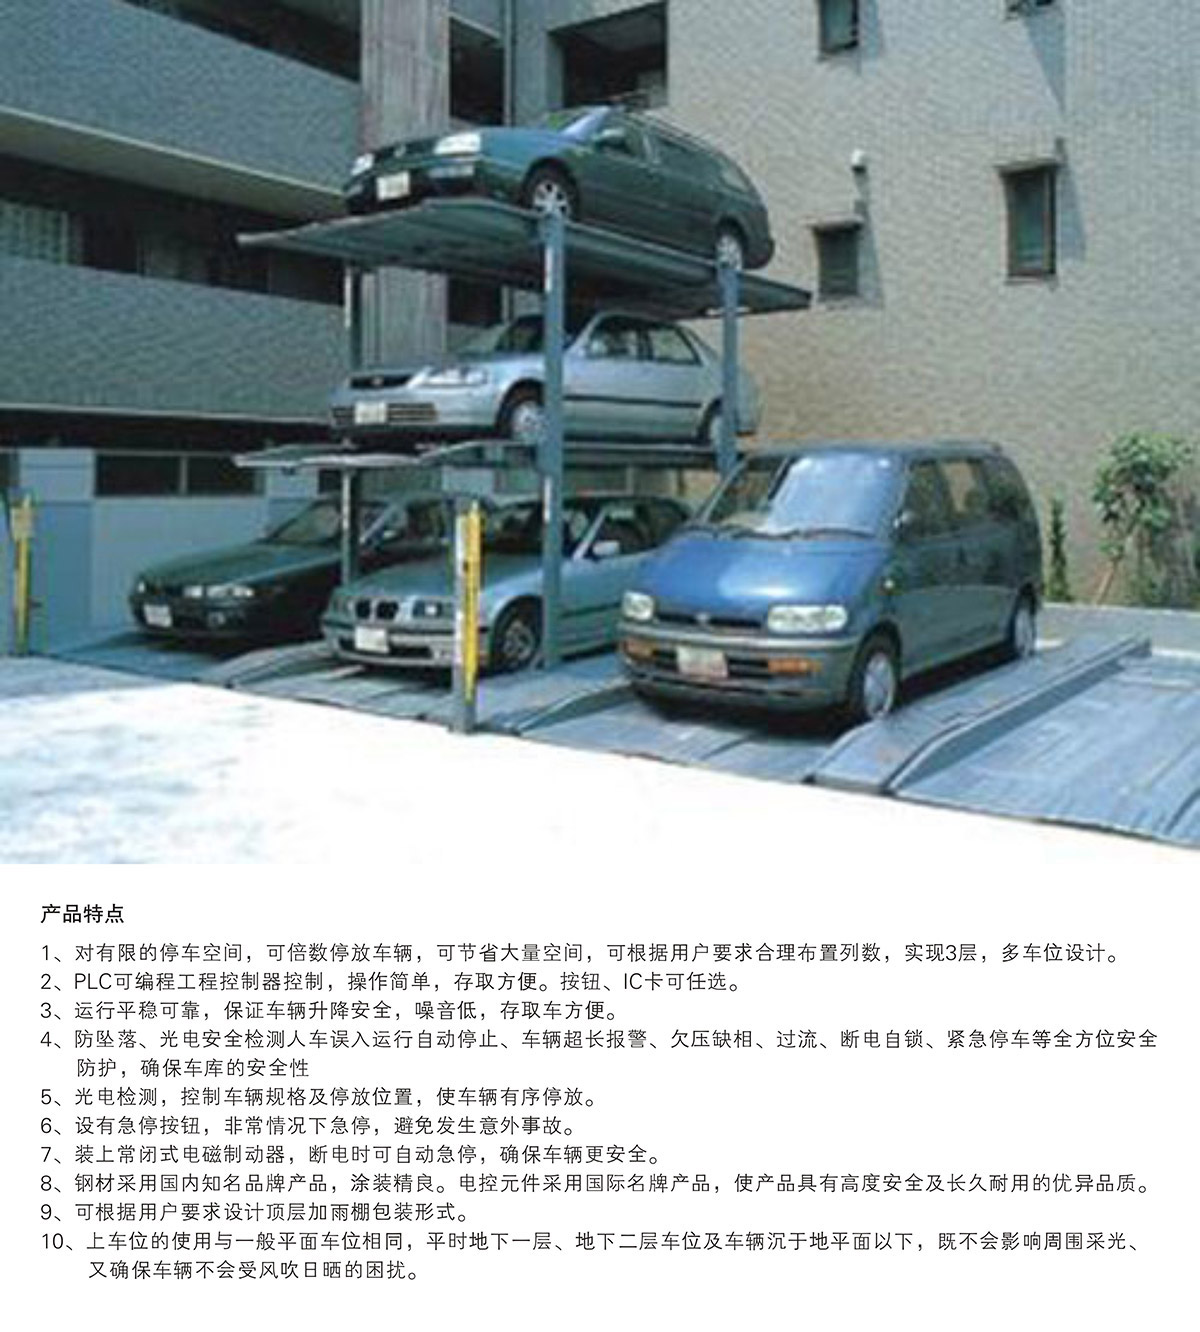 四川PJS3-D2三层地坑简易升降机械车库产品特点.jpg